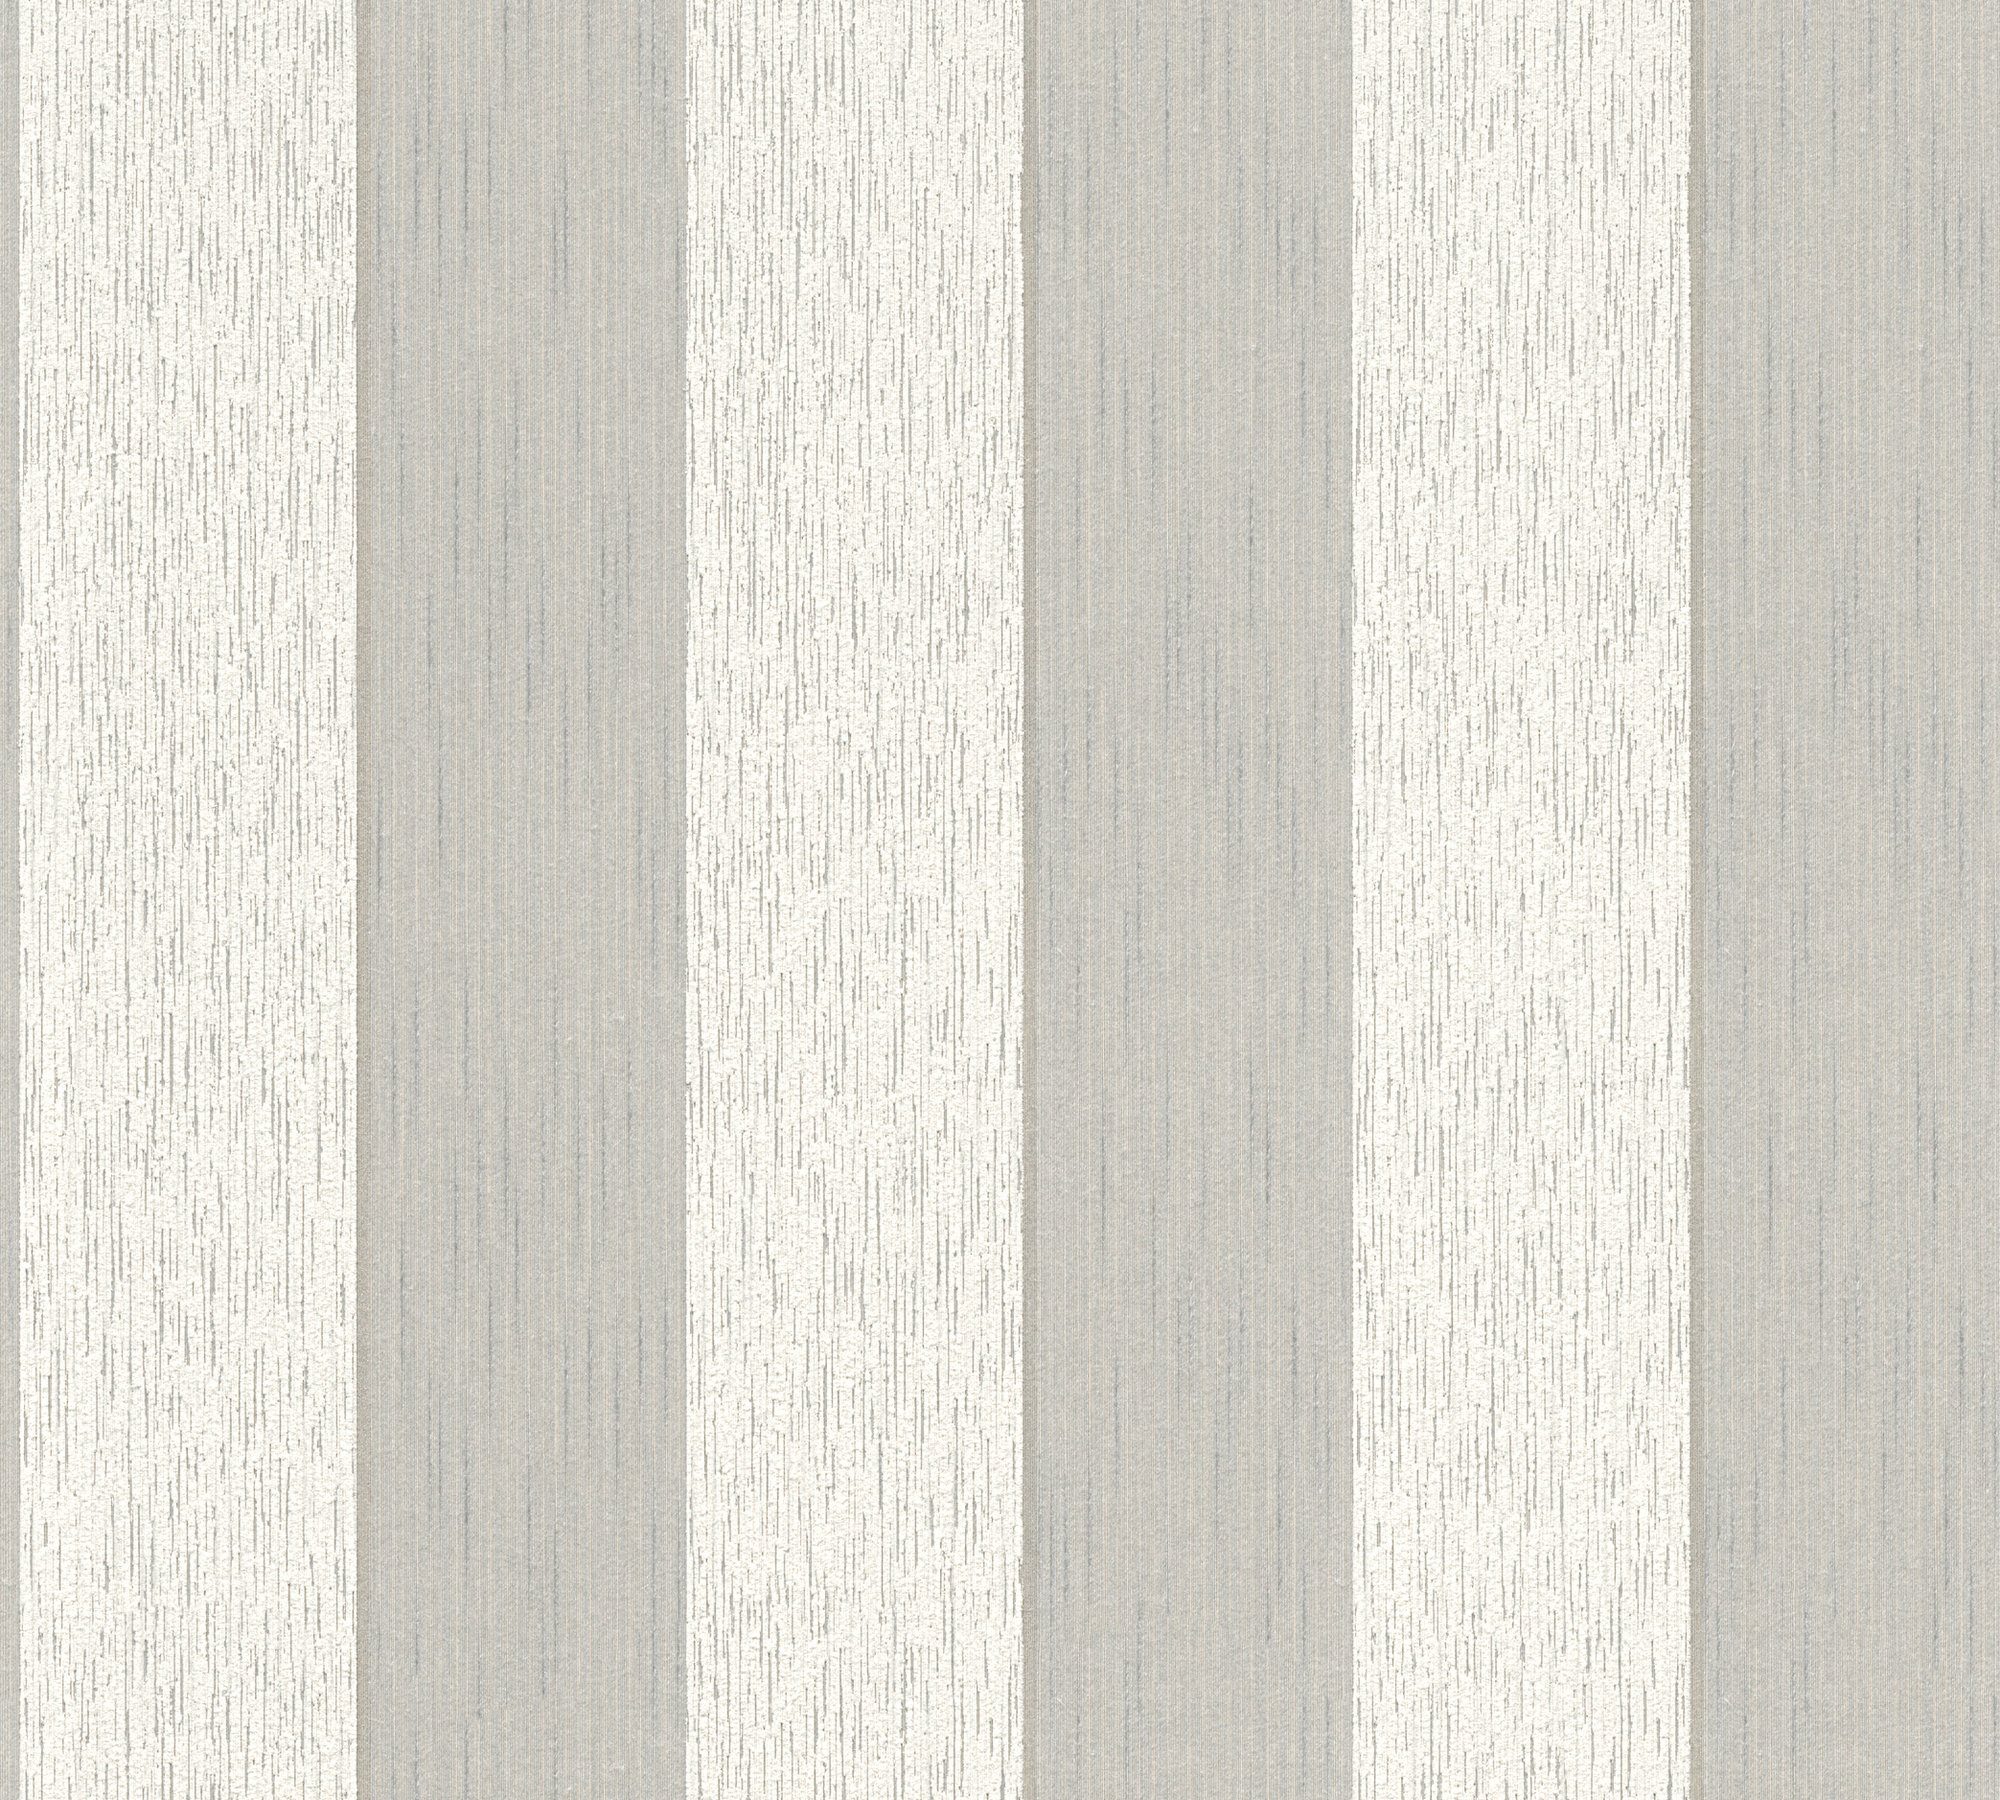 Architects samtig, gestreift, beige/creme Paper Textiltapete Streifen A.S. Tessuto, Tapete Création